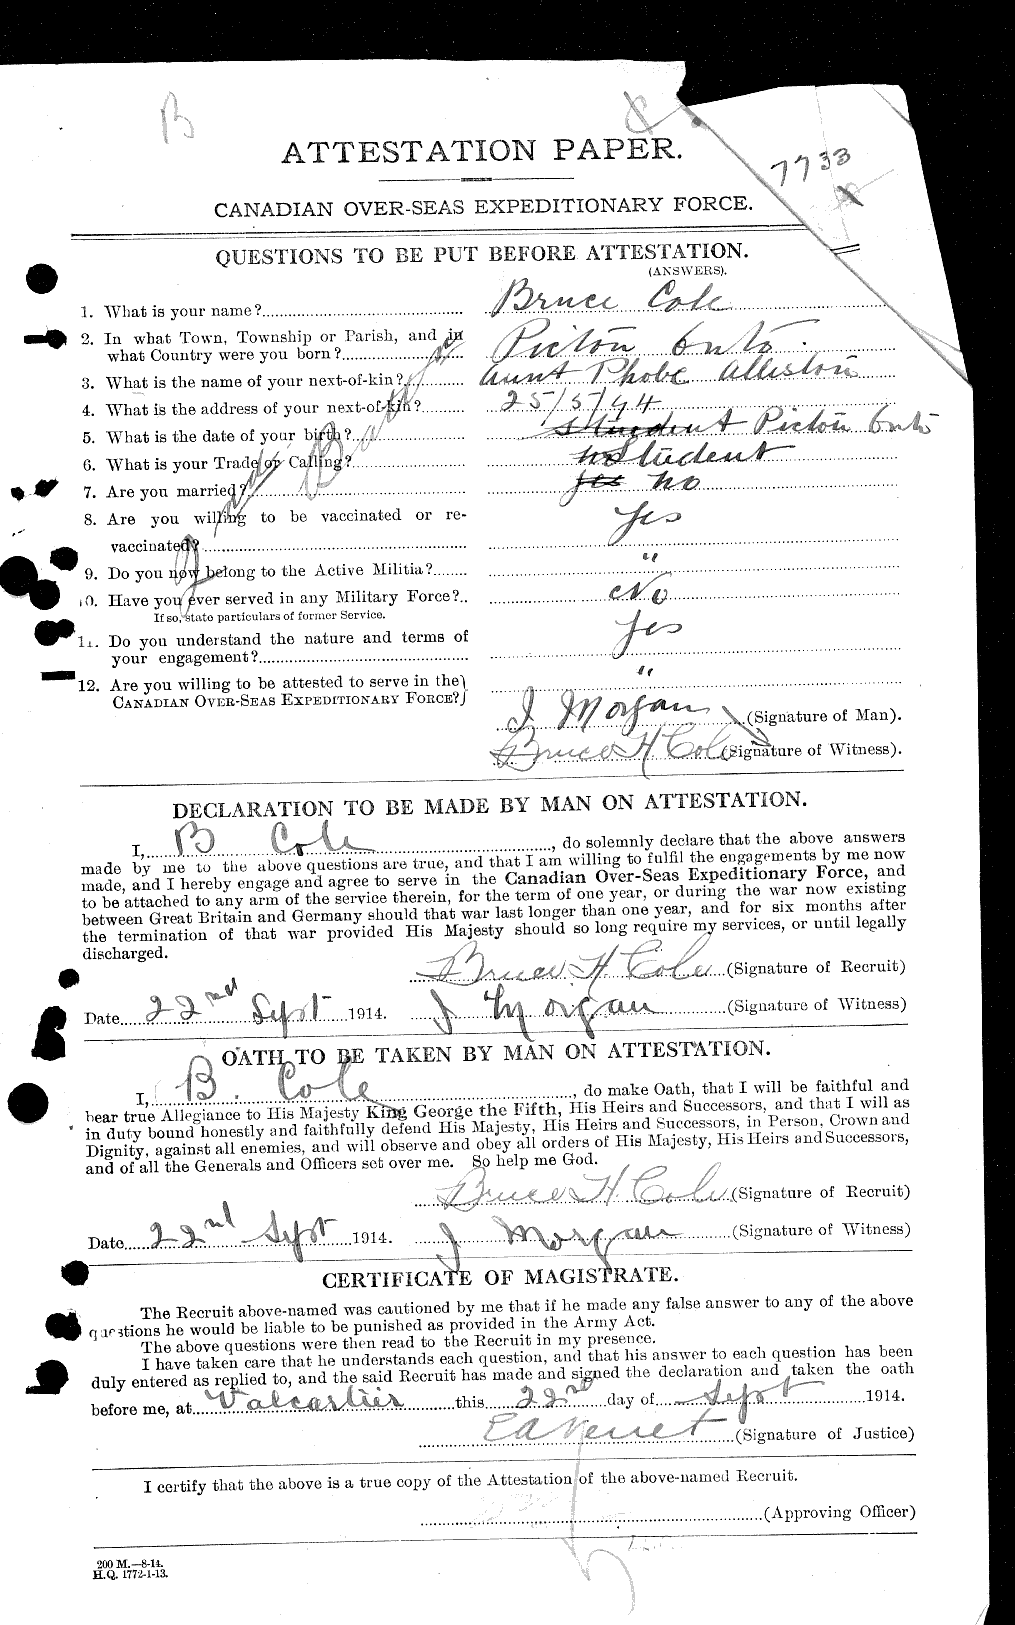 Dossiers du Personnel de la Première Guerre mondiale - CEC 027626a